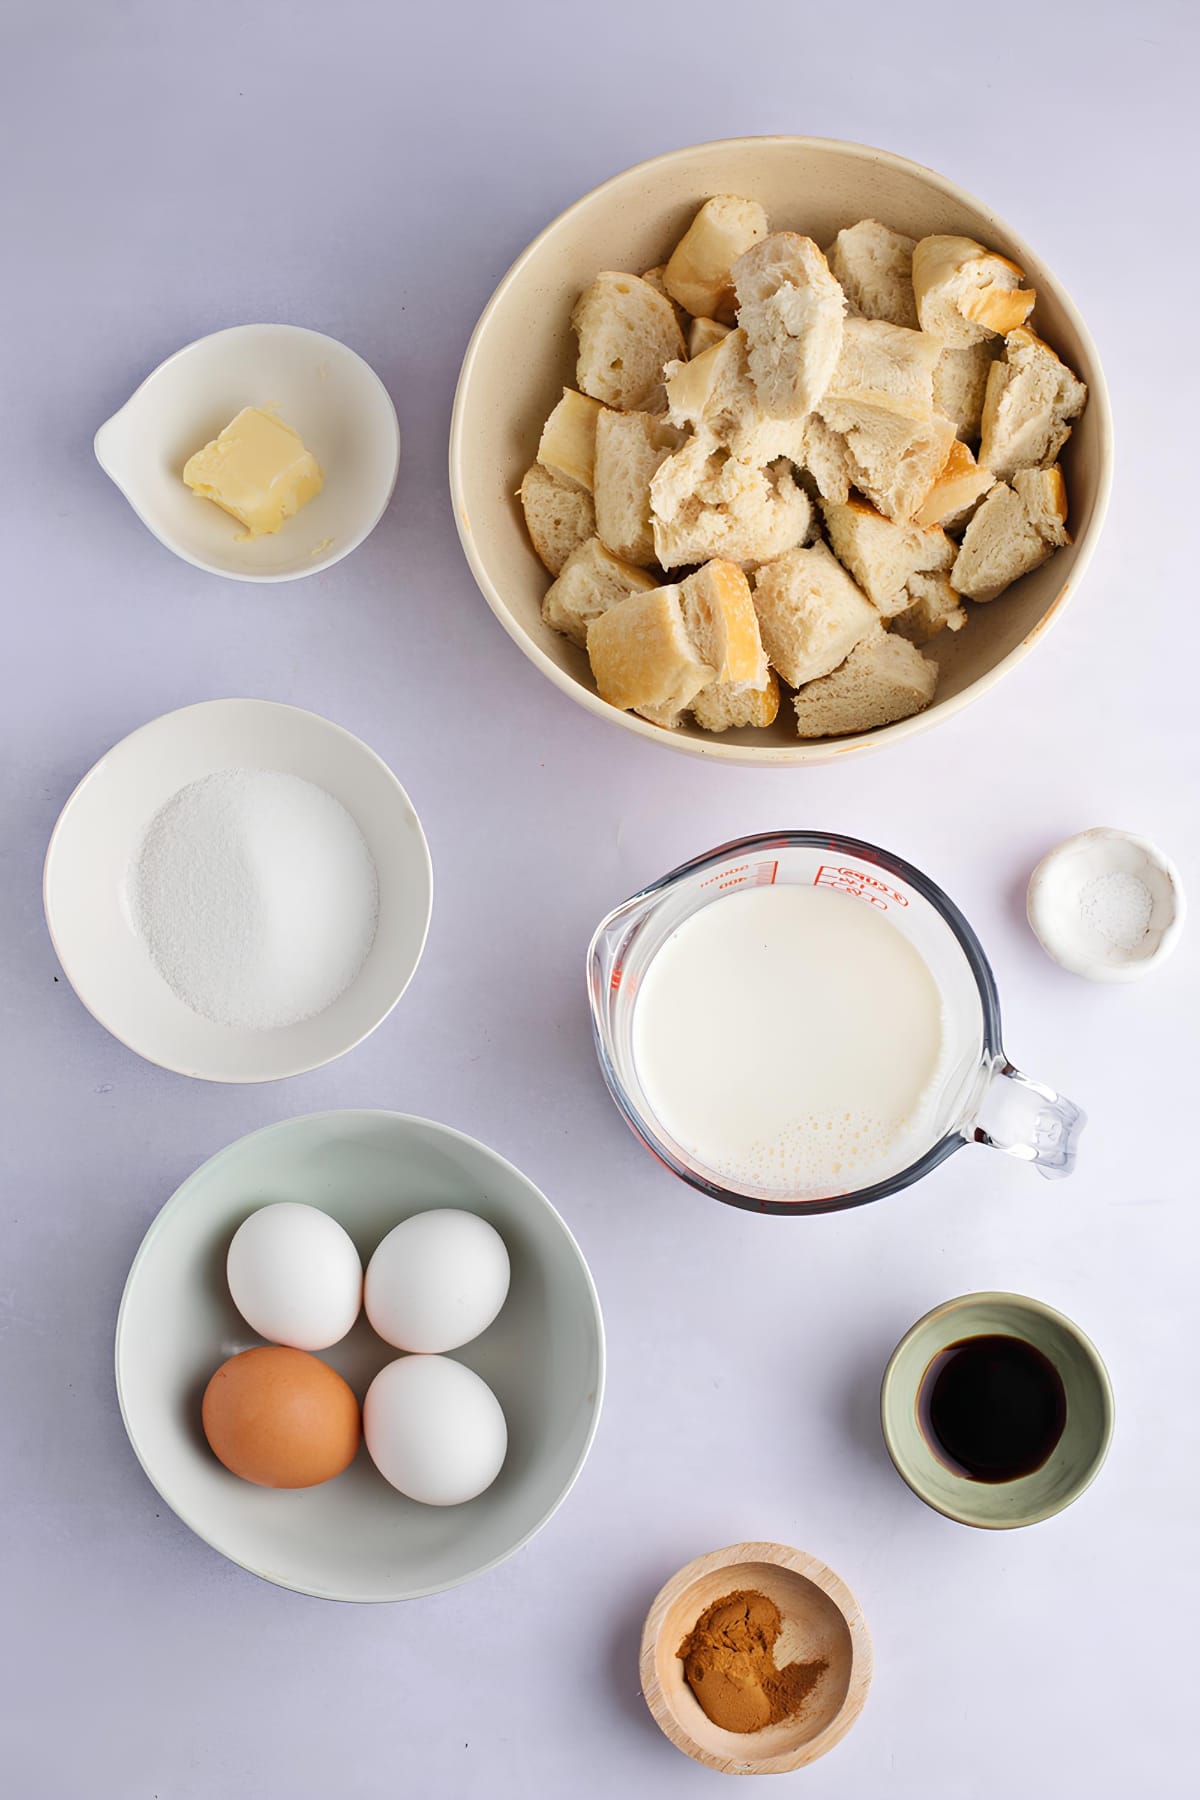 French Toast Casserole Ingredients - Bread, Eggs, Milk, White Sugar, Salt, Vanilla Extract, Margarine and Ground Cinnamon